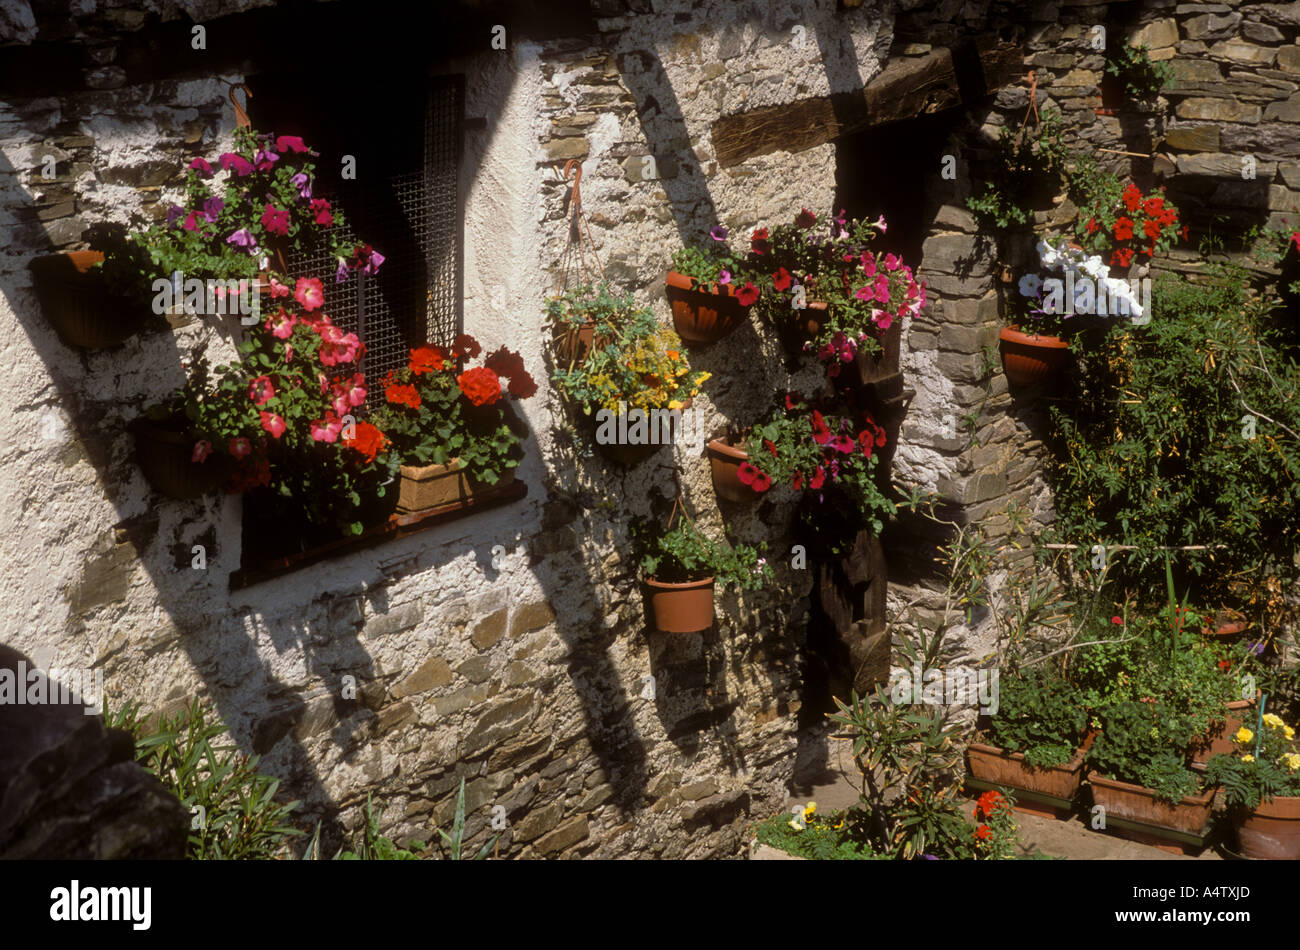 Blumen schmücken Wiondows auf altes Steinhaus, Sogogna, Verzasca, Schweiz Stockfoto